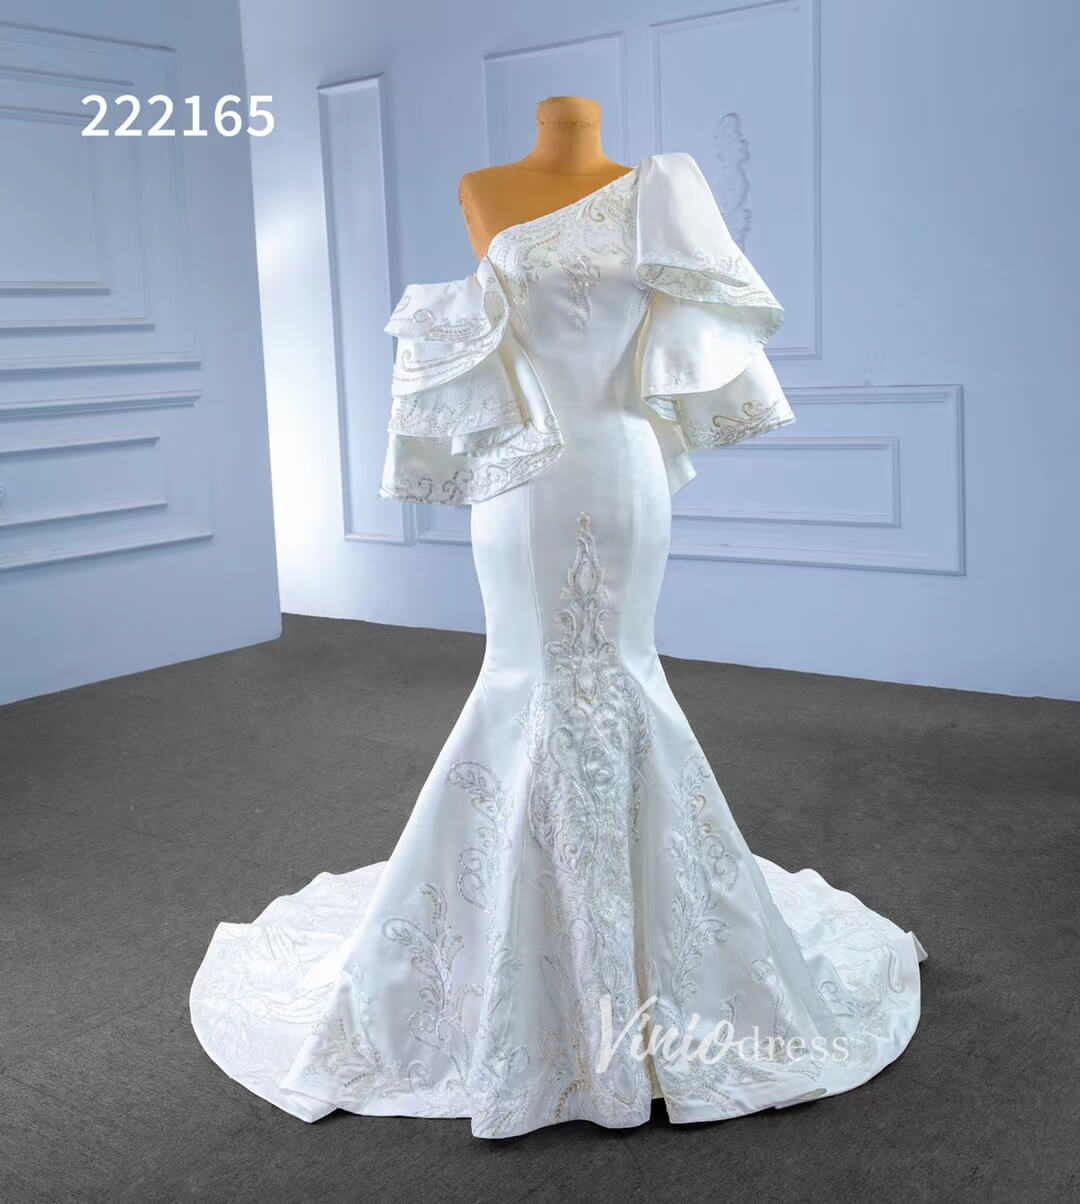 Vintage Satin Mermaid Wedding Dresses Ruffle Sleeves 222165-wedding dresses-Viniodress-Viniodress